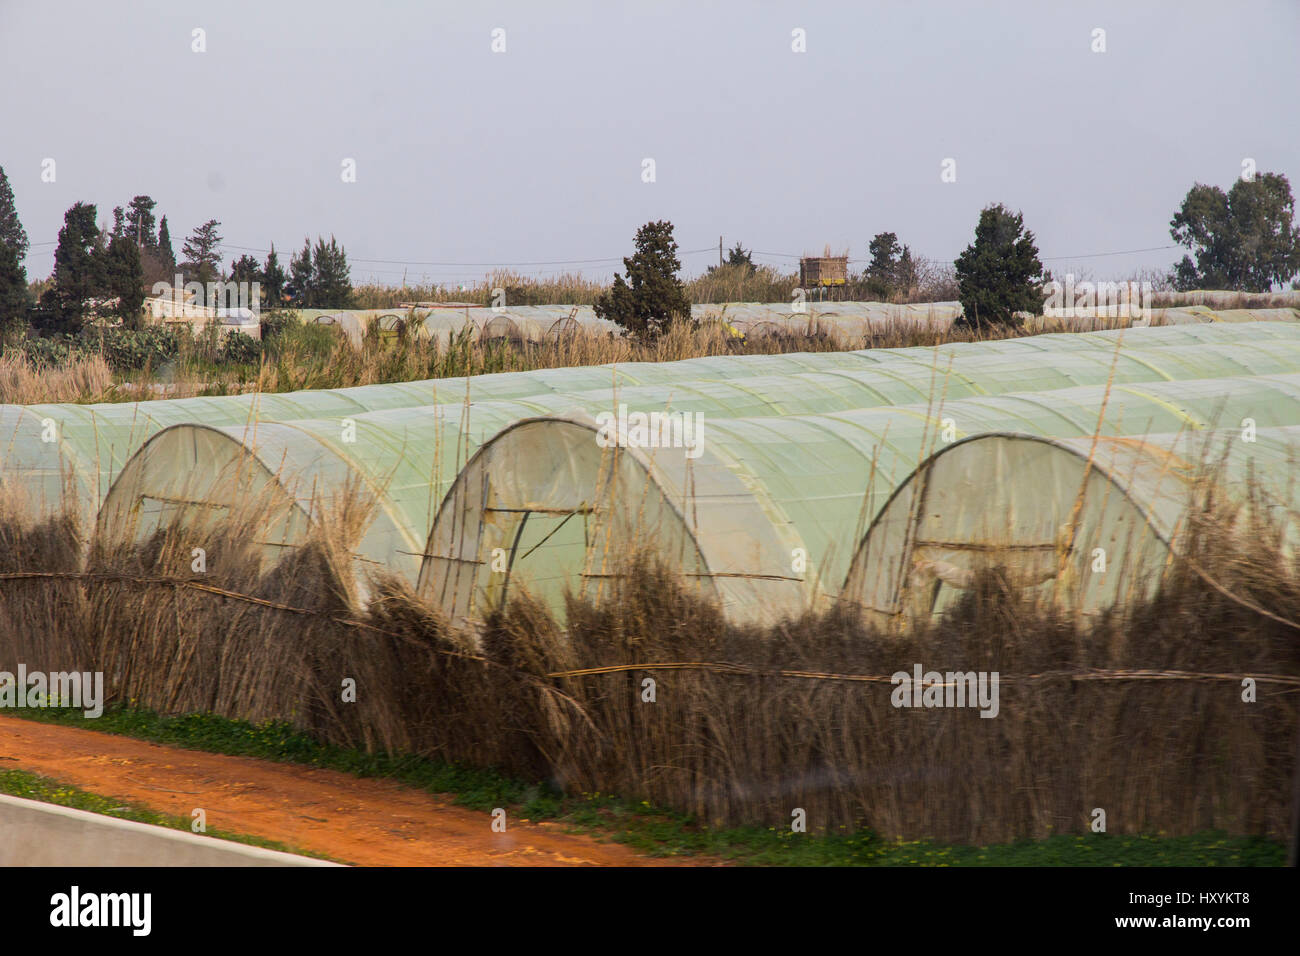 Mit Hilfe von niederländischen Technologie, hat Gewächshausanbau von Gemüse entlang der mediterranen Küste Algeriens gemausert. Stockfoto